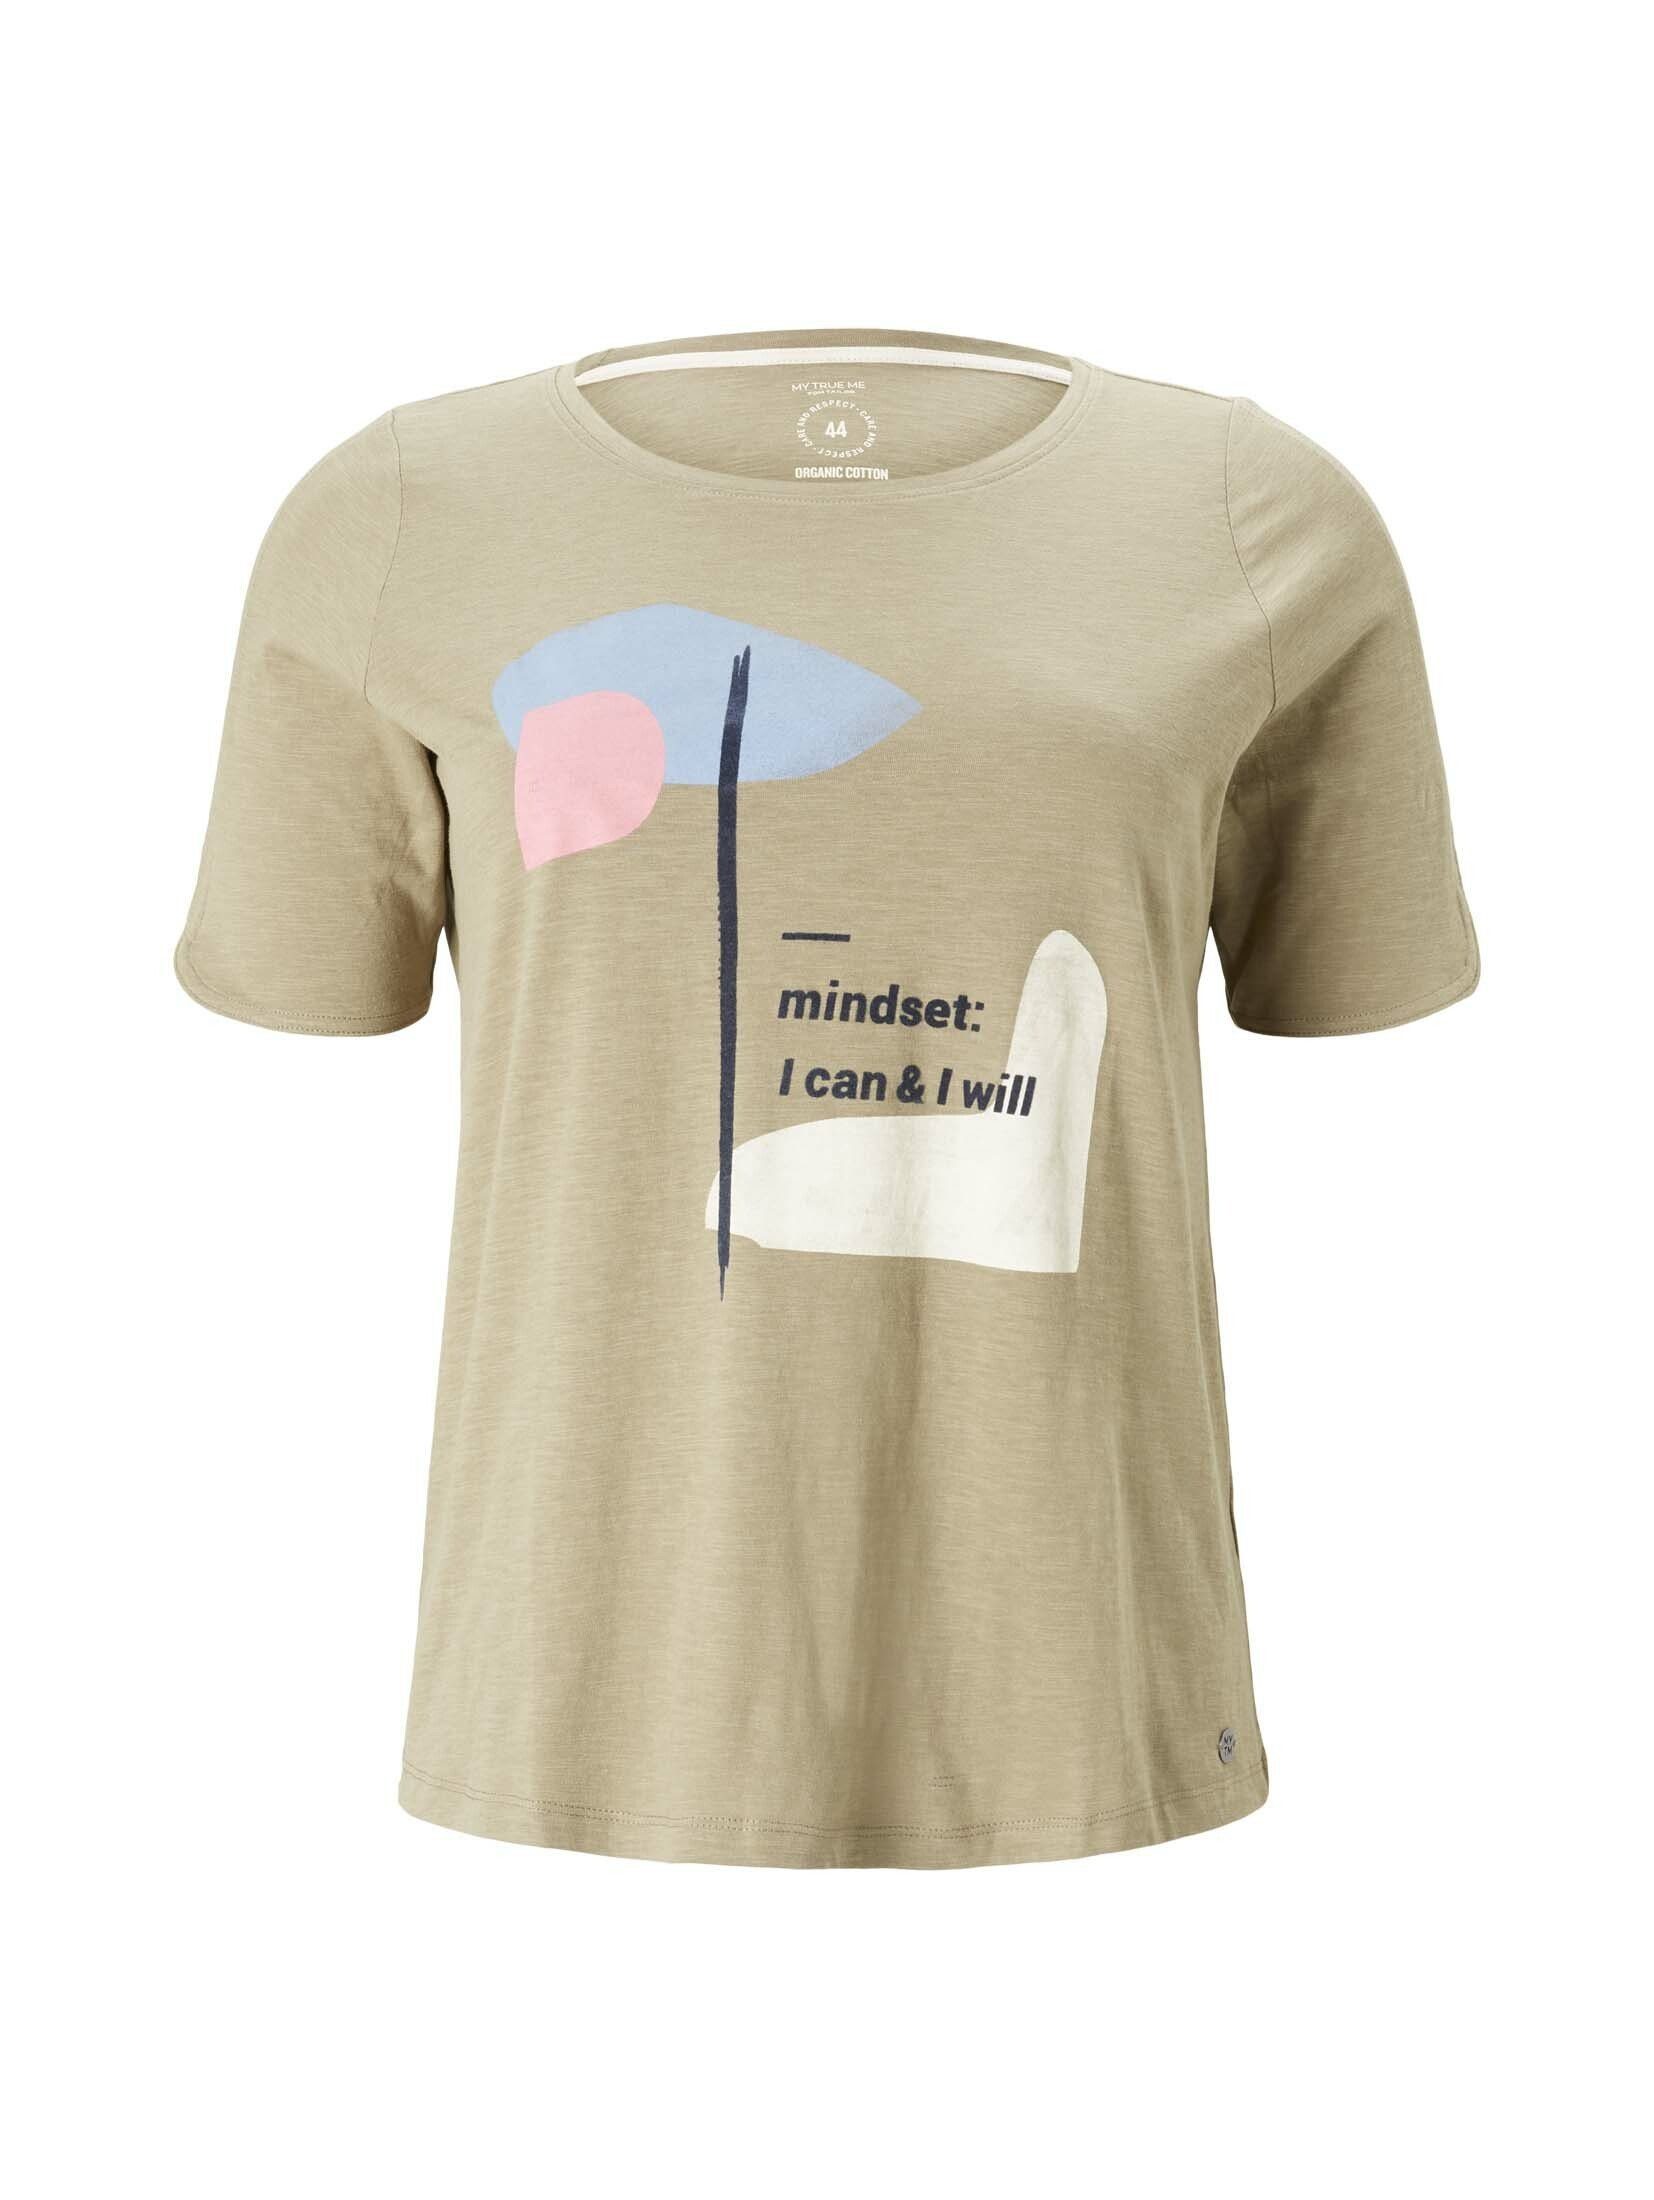 TOM TAILOR PLUS T-Shirt T-Shirt New Plus Light - Khaki Artwork mit